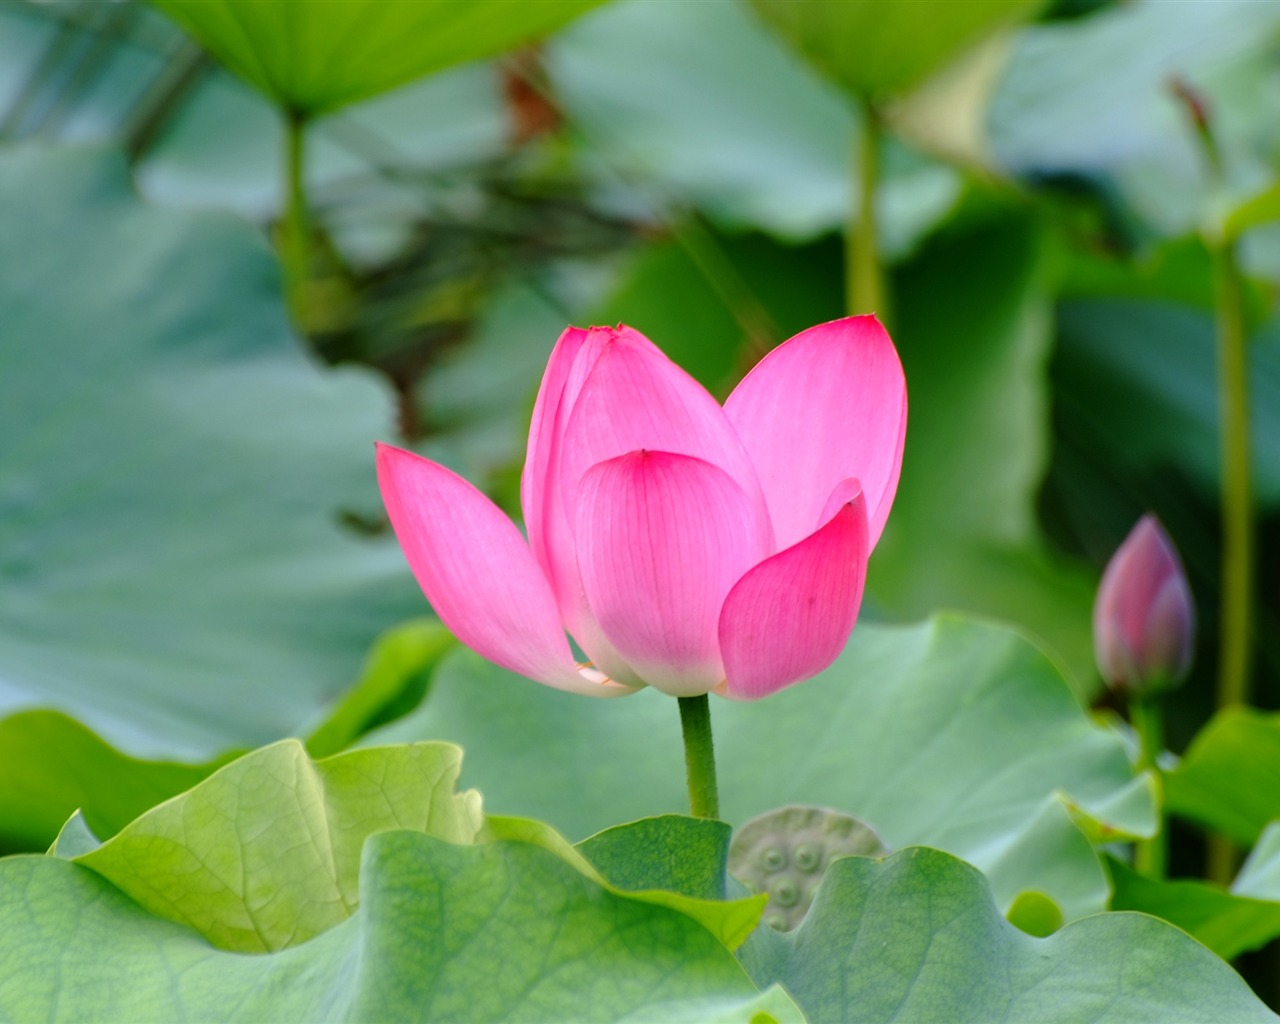 Rose Garden de la Lotus (œuvres des barres d'armature) #1 - 1280x1024